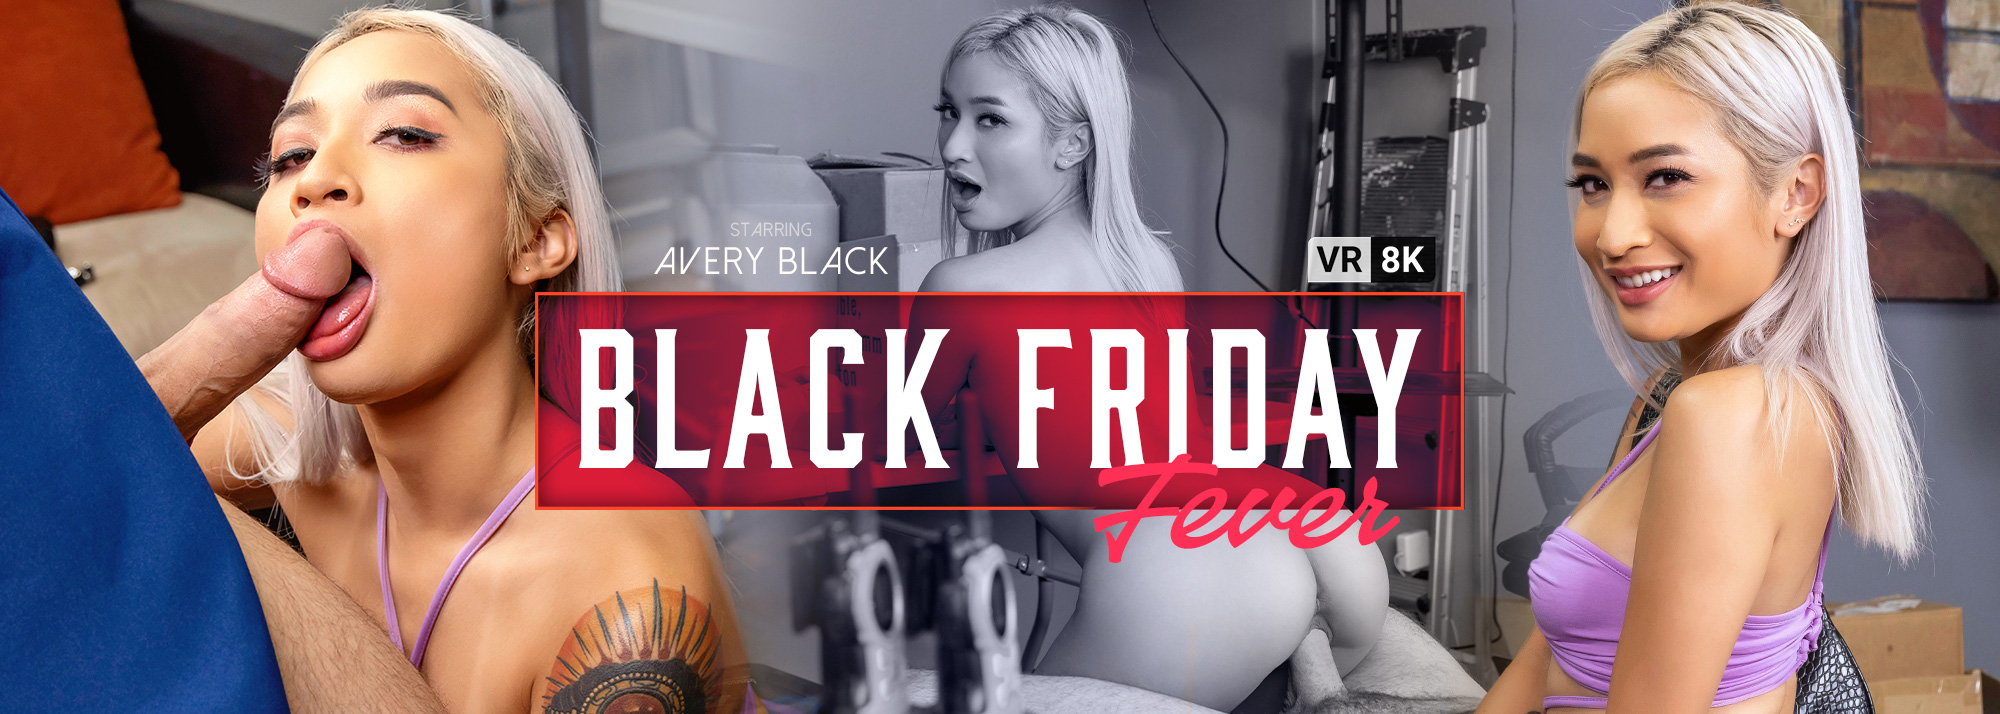 Black Friday Fever - VR Porn Video, Starring Avery Black